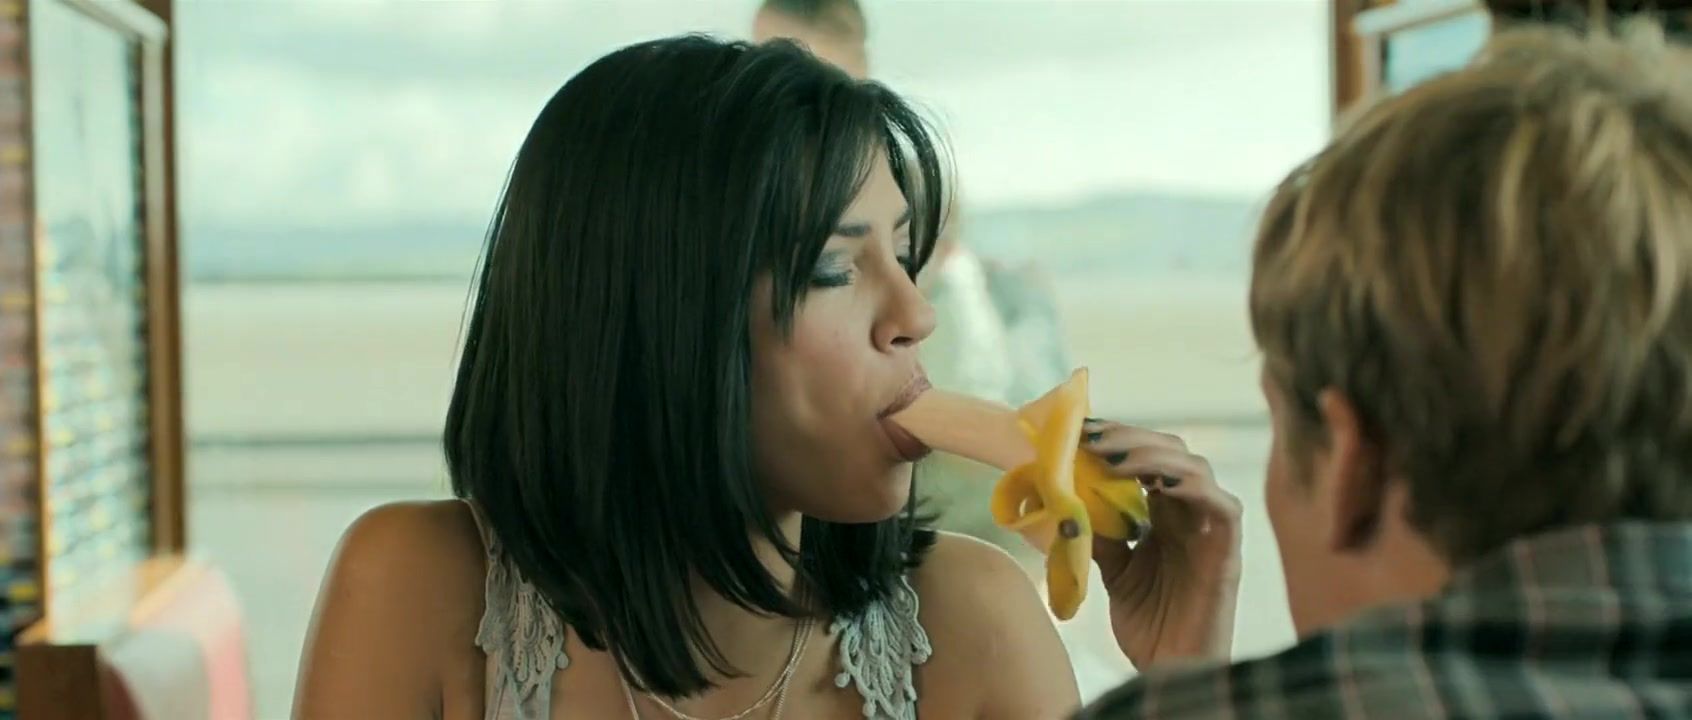 Hidden Cam Jessica Szohr sex scenes in 'Love Bite' Small Tits